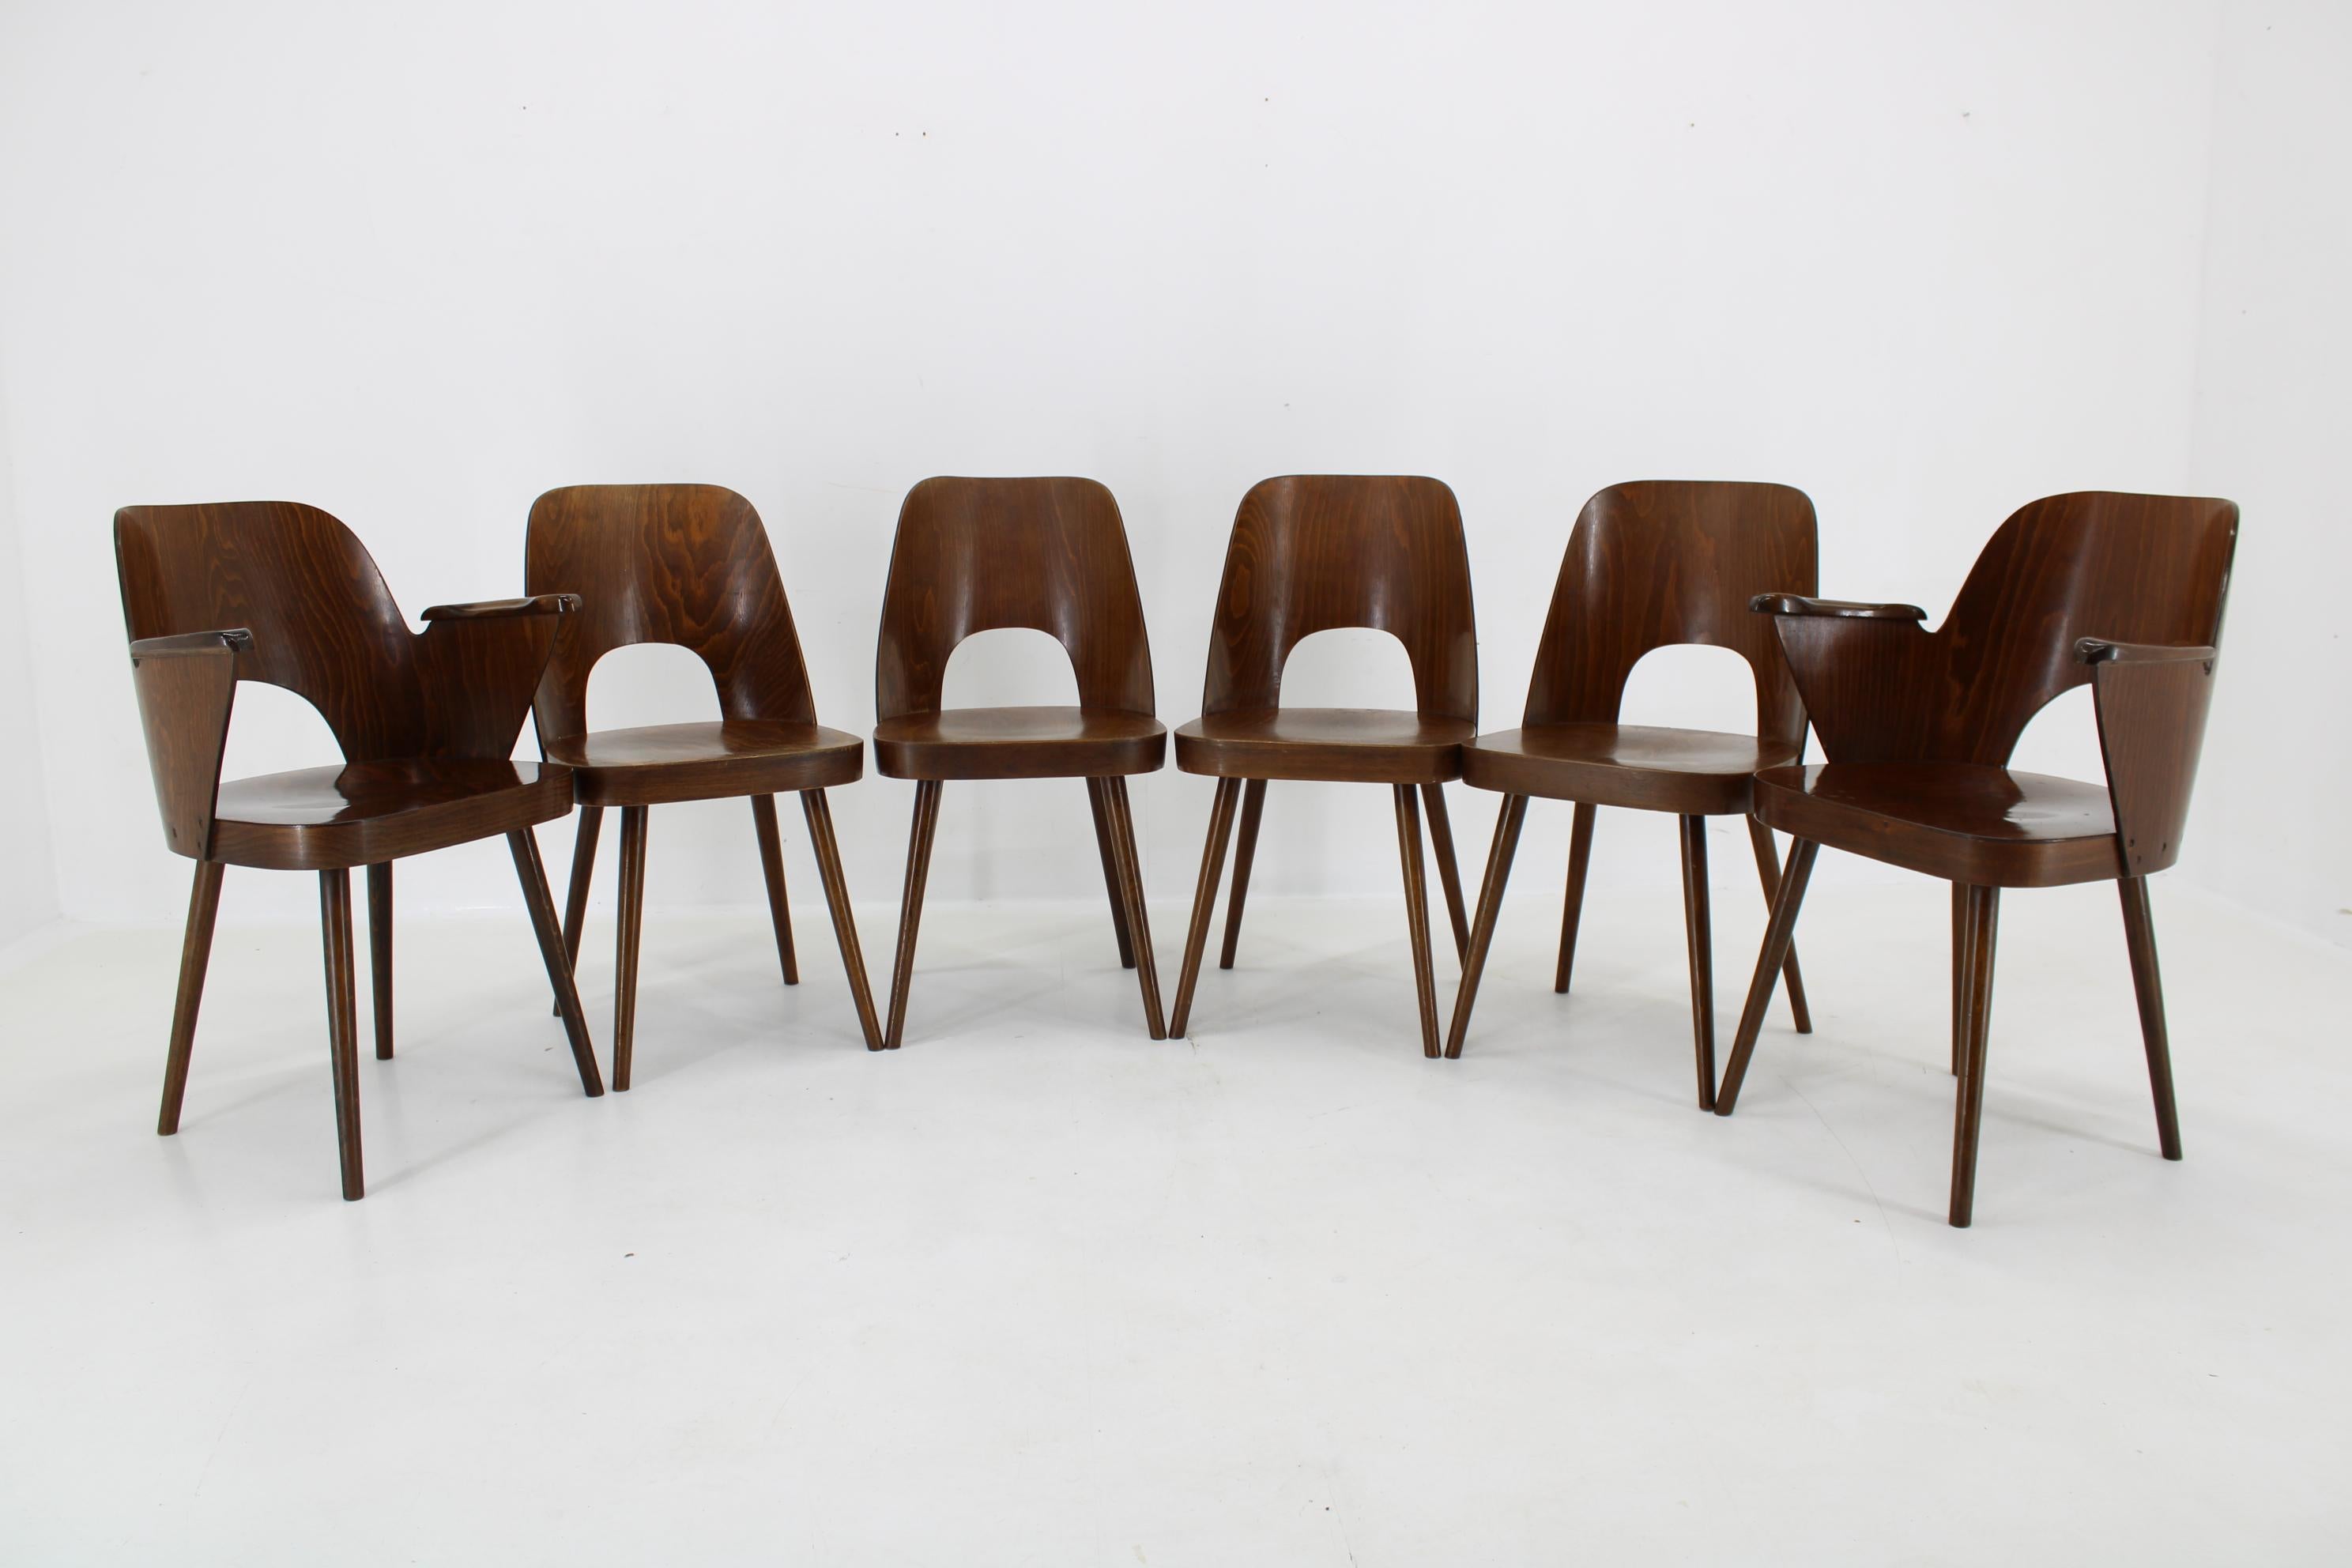 - Hergestellt aus gebeiztem Buchenholz und Buchensperrholz 
- Die Holzteile wurden neu poliert
- Armlehnen 64 cm
- Abmessungen der Stühle ohne Armlehnen:  82x(47)x44x55cm